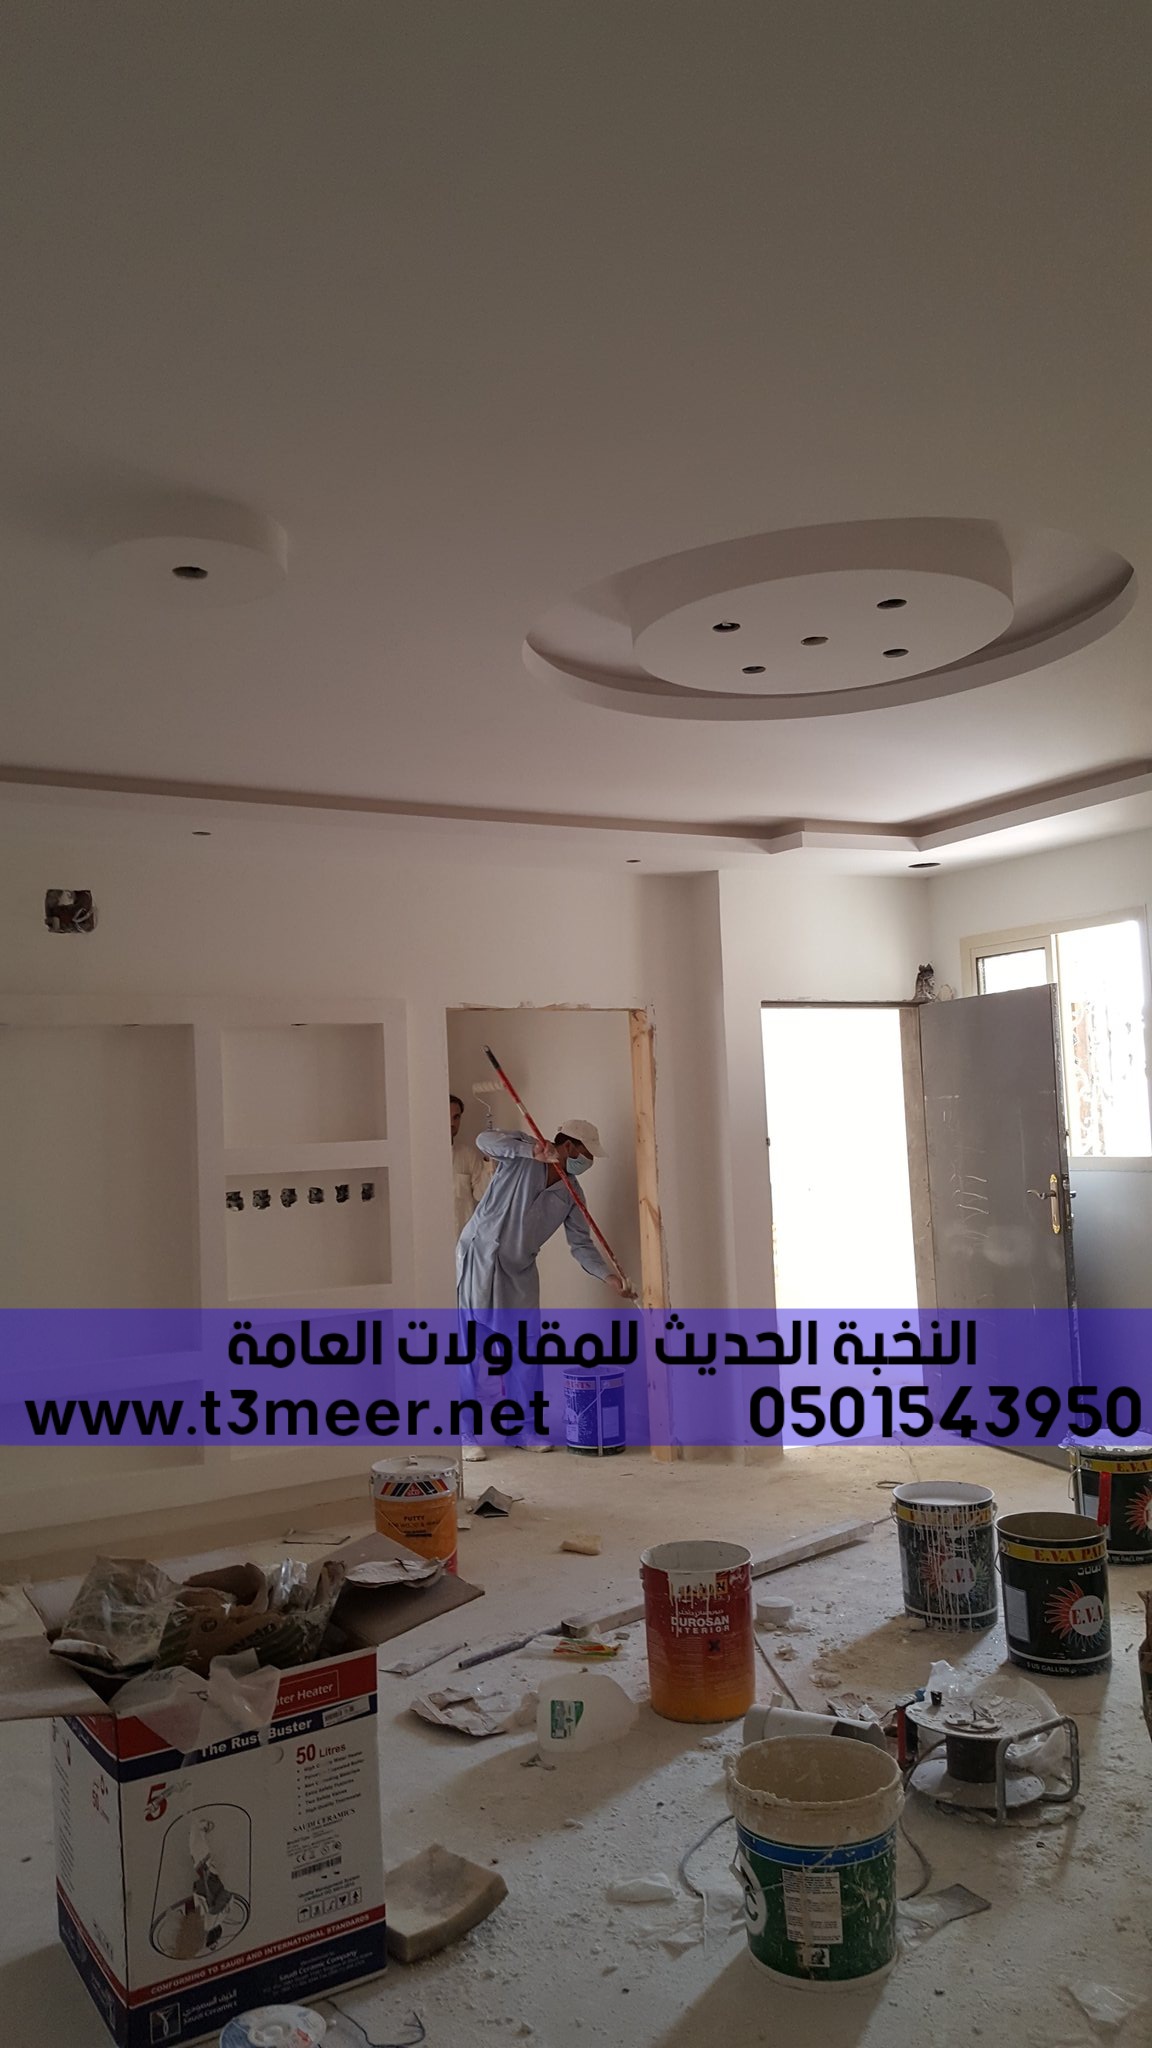 مقاول بناء و تصميم ديكورات في جدة , 0501543950